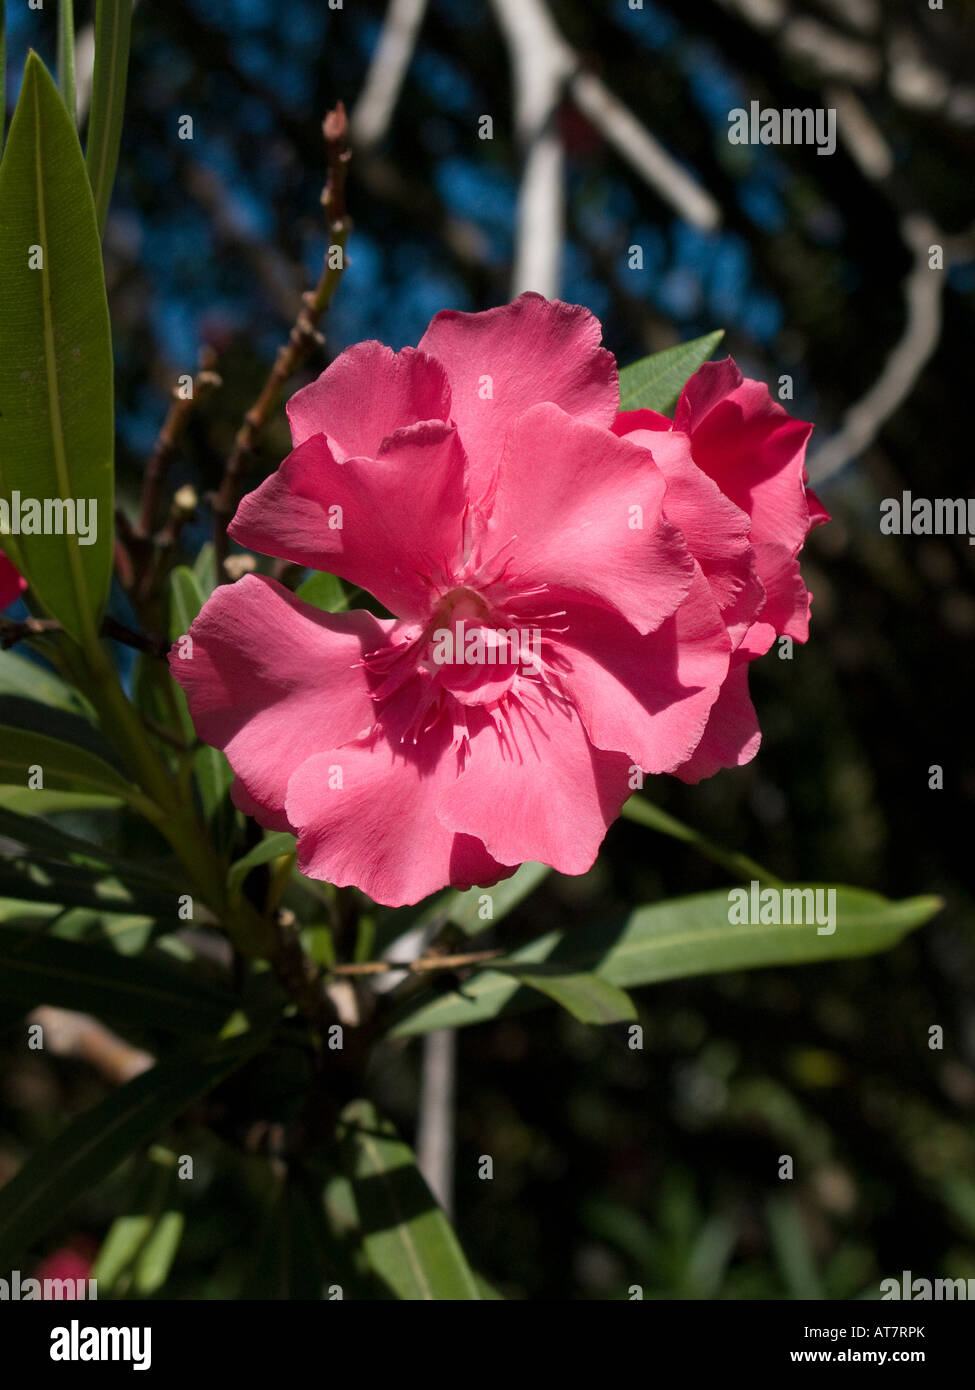 Rose Fleur plante tropical exotique chez Spring Bay, Bequia, Caraïbes  Antilles les tropiques, Flore Fleurs TROPICALES Photo Stock - Alamy